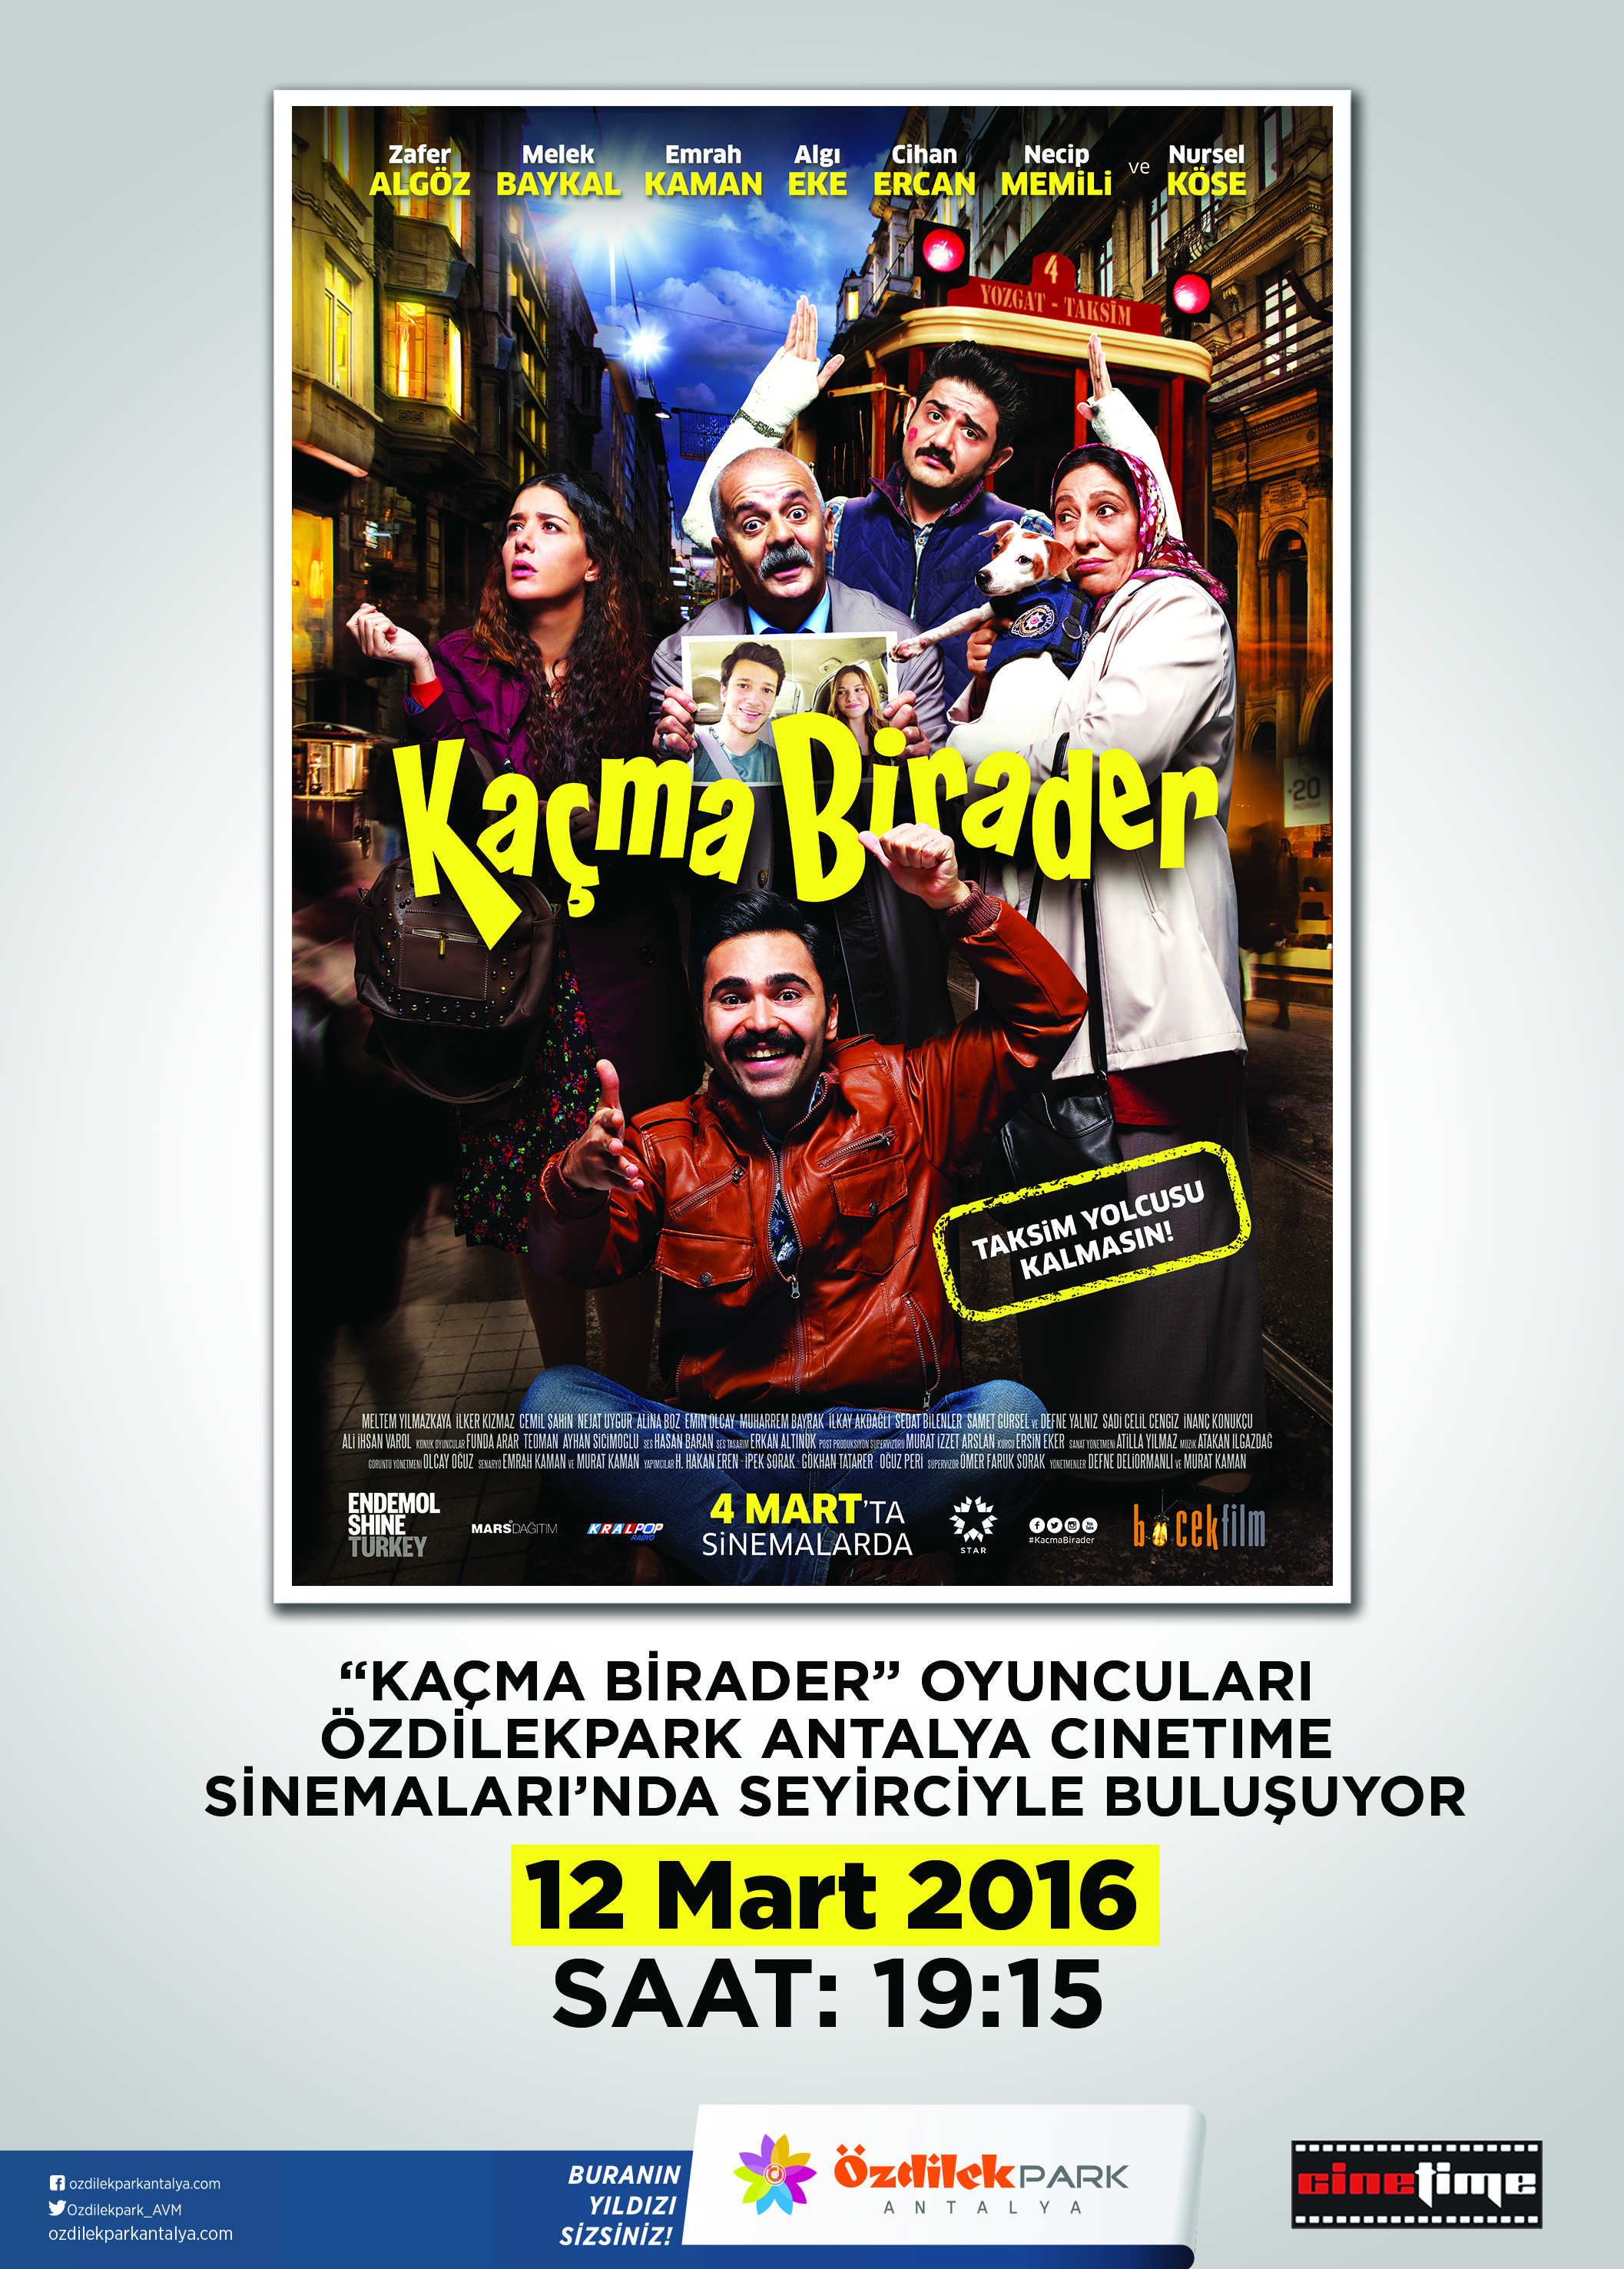 “Kaçma Birader” Filmi Galası ÖzdilekPark Antalya’da